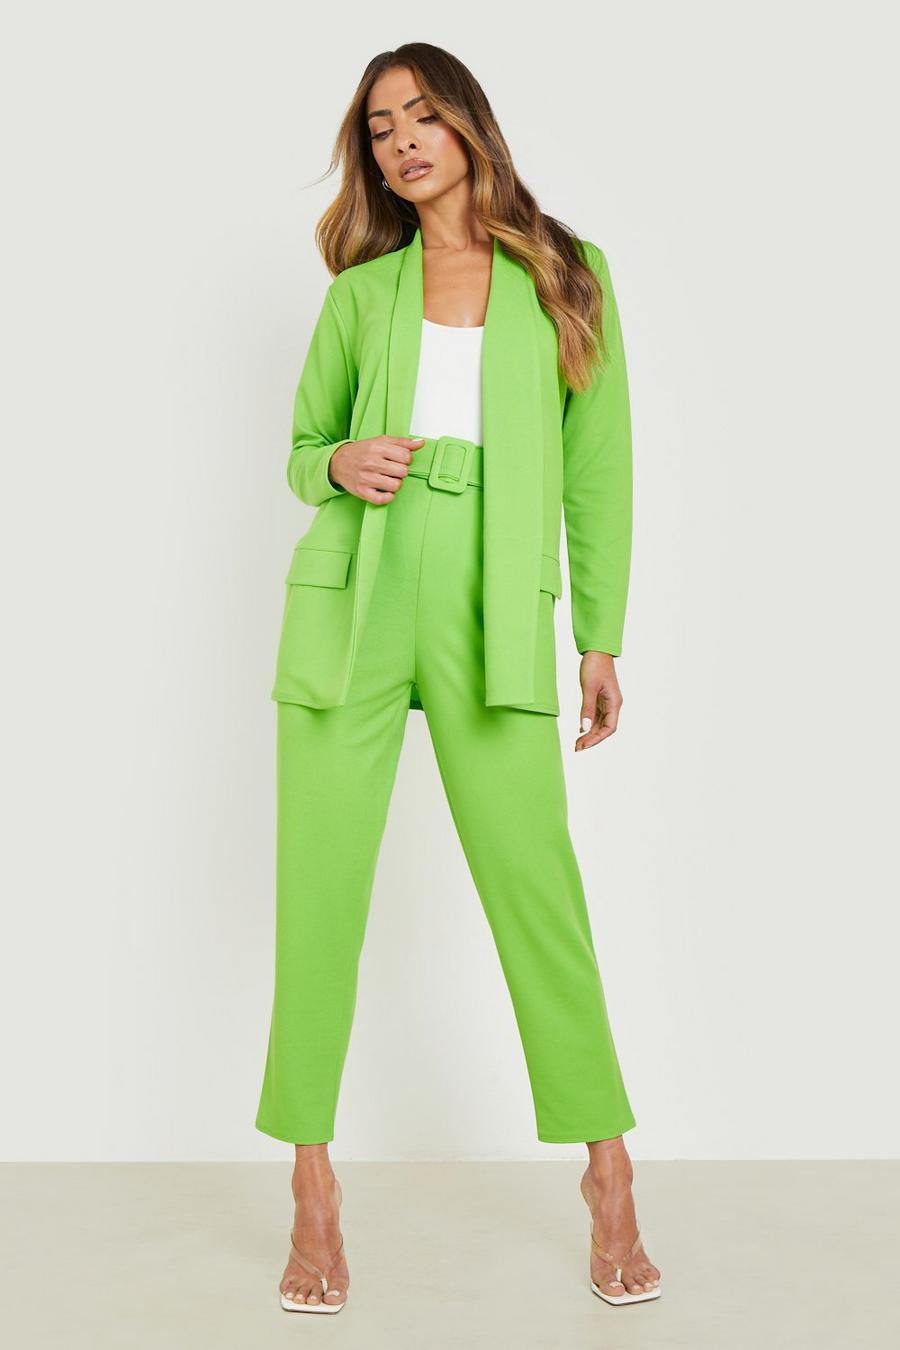 Anzug-Set mit Blazer und Hose, Apple green grün